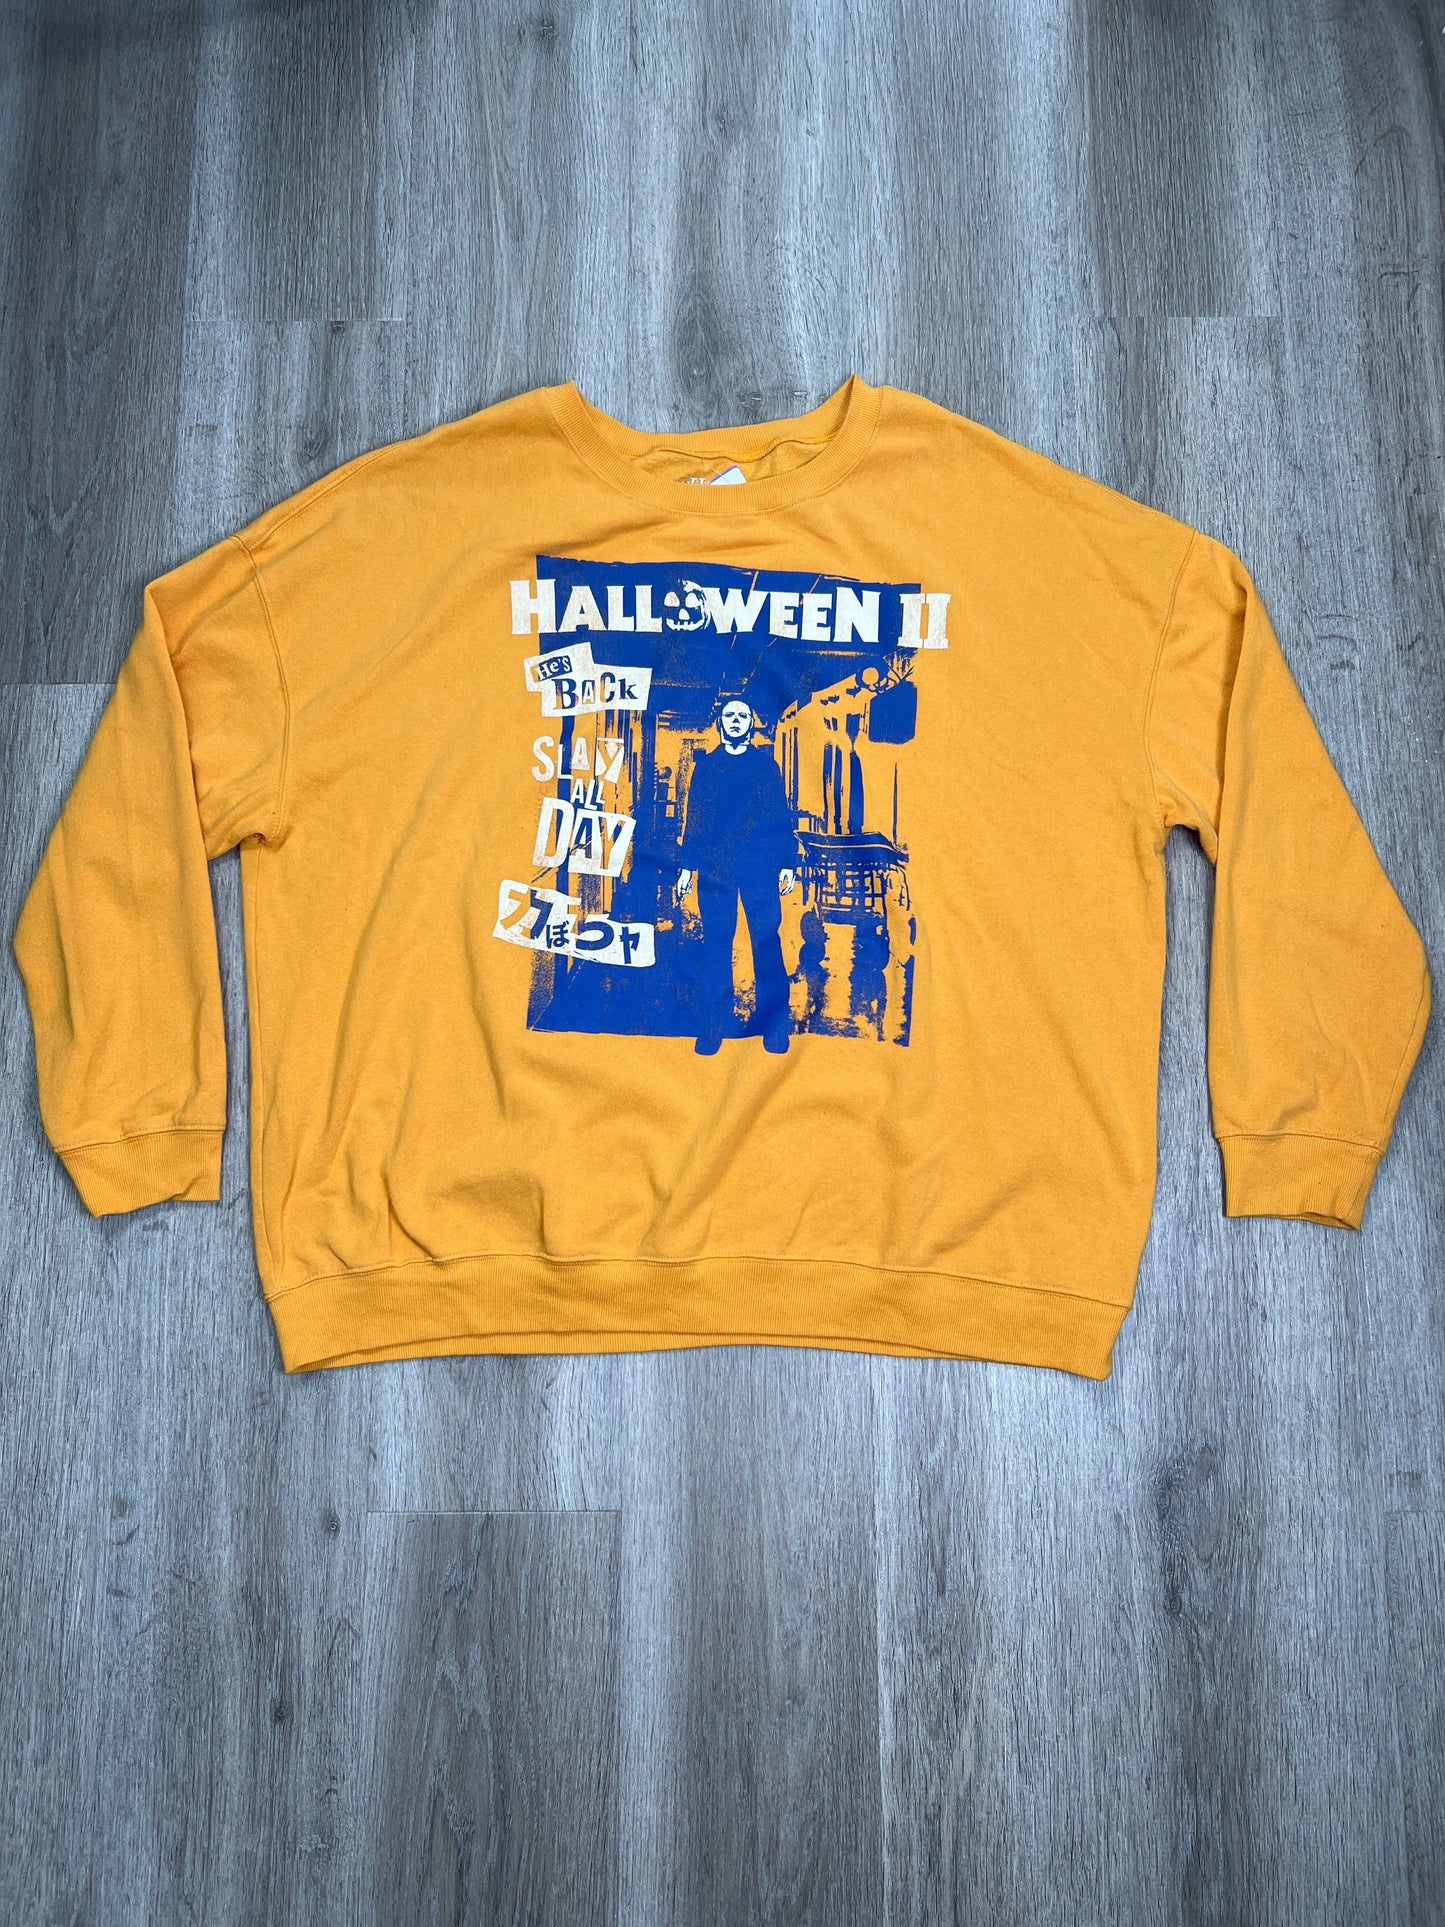 Yellow Sweatshirt Crewneck Halloween II, Size 3x